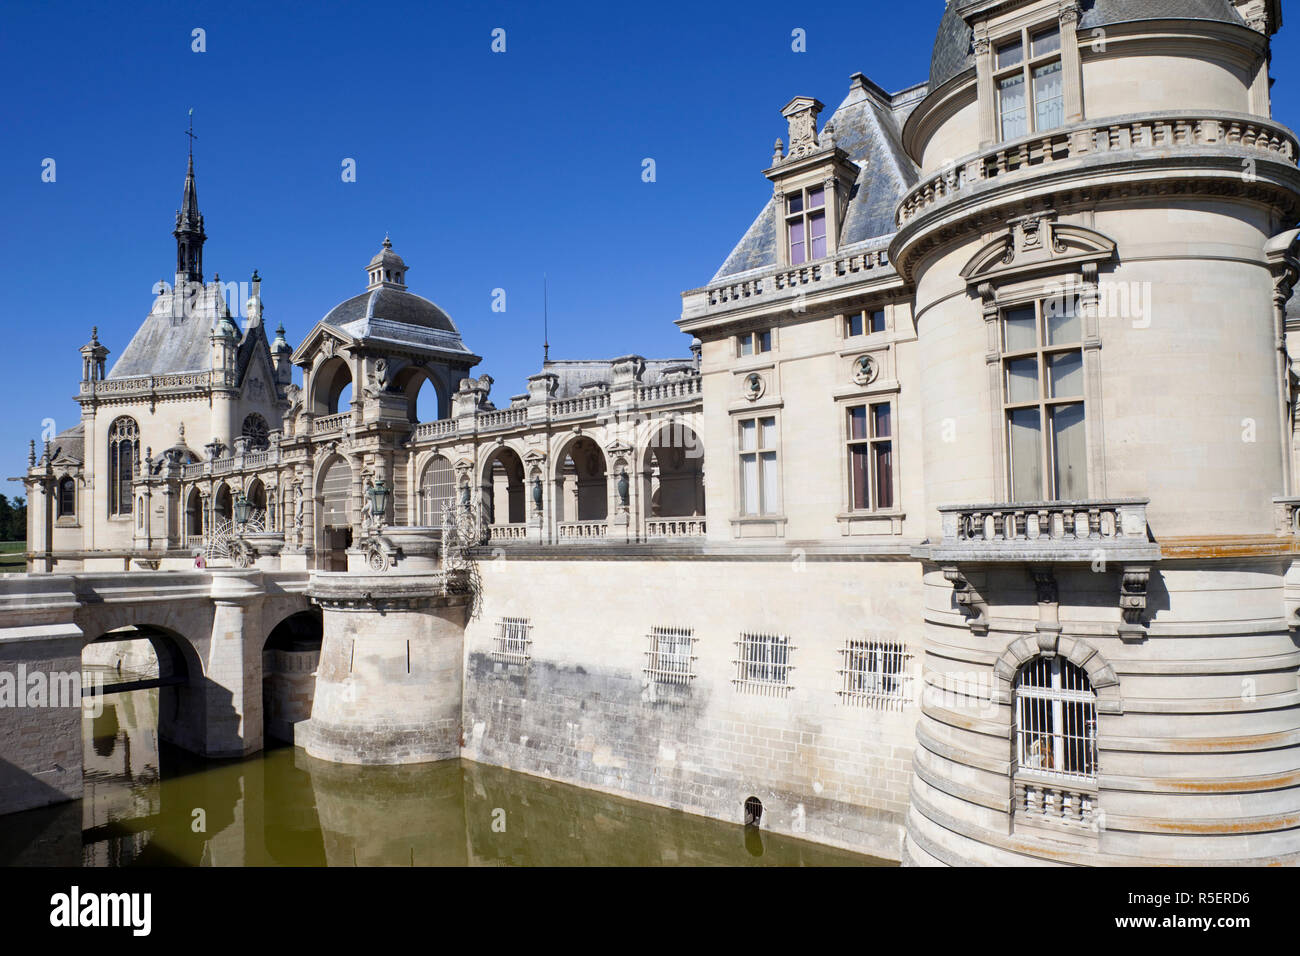 France, Ile-de-France, Chantilly, Chateau de Chantilly Stock Photo